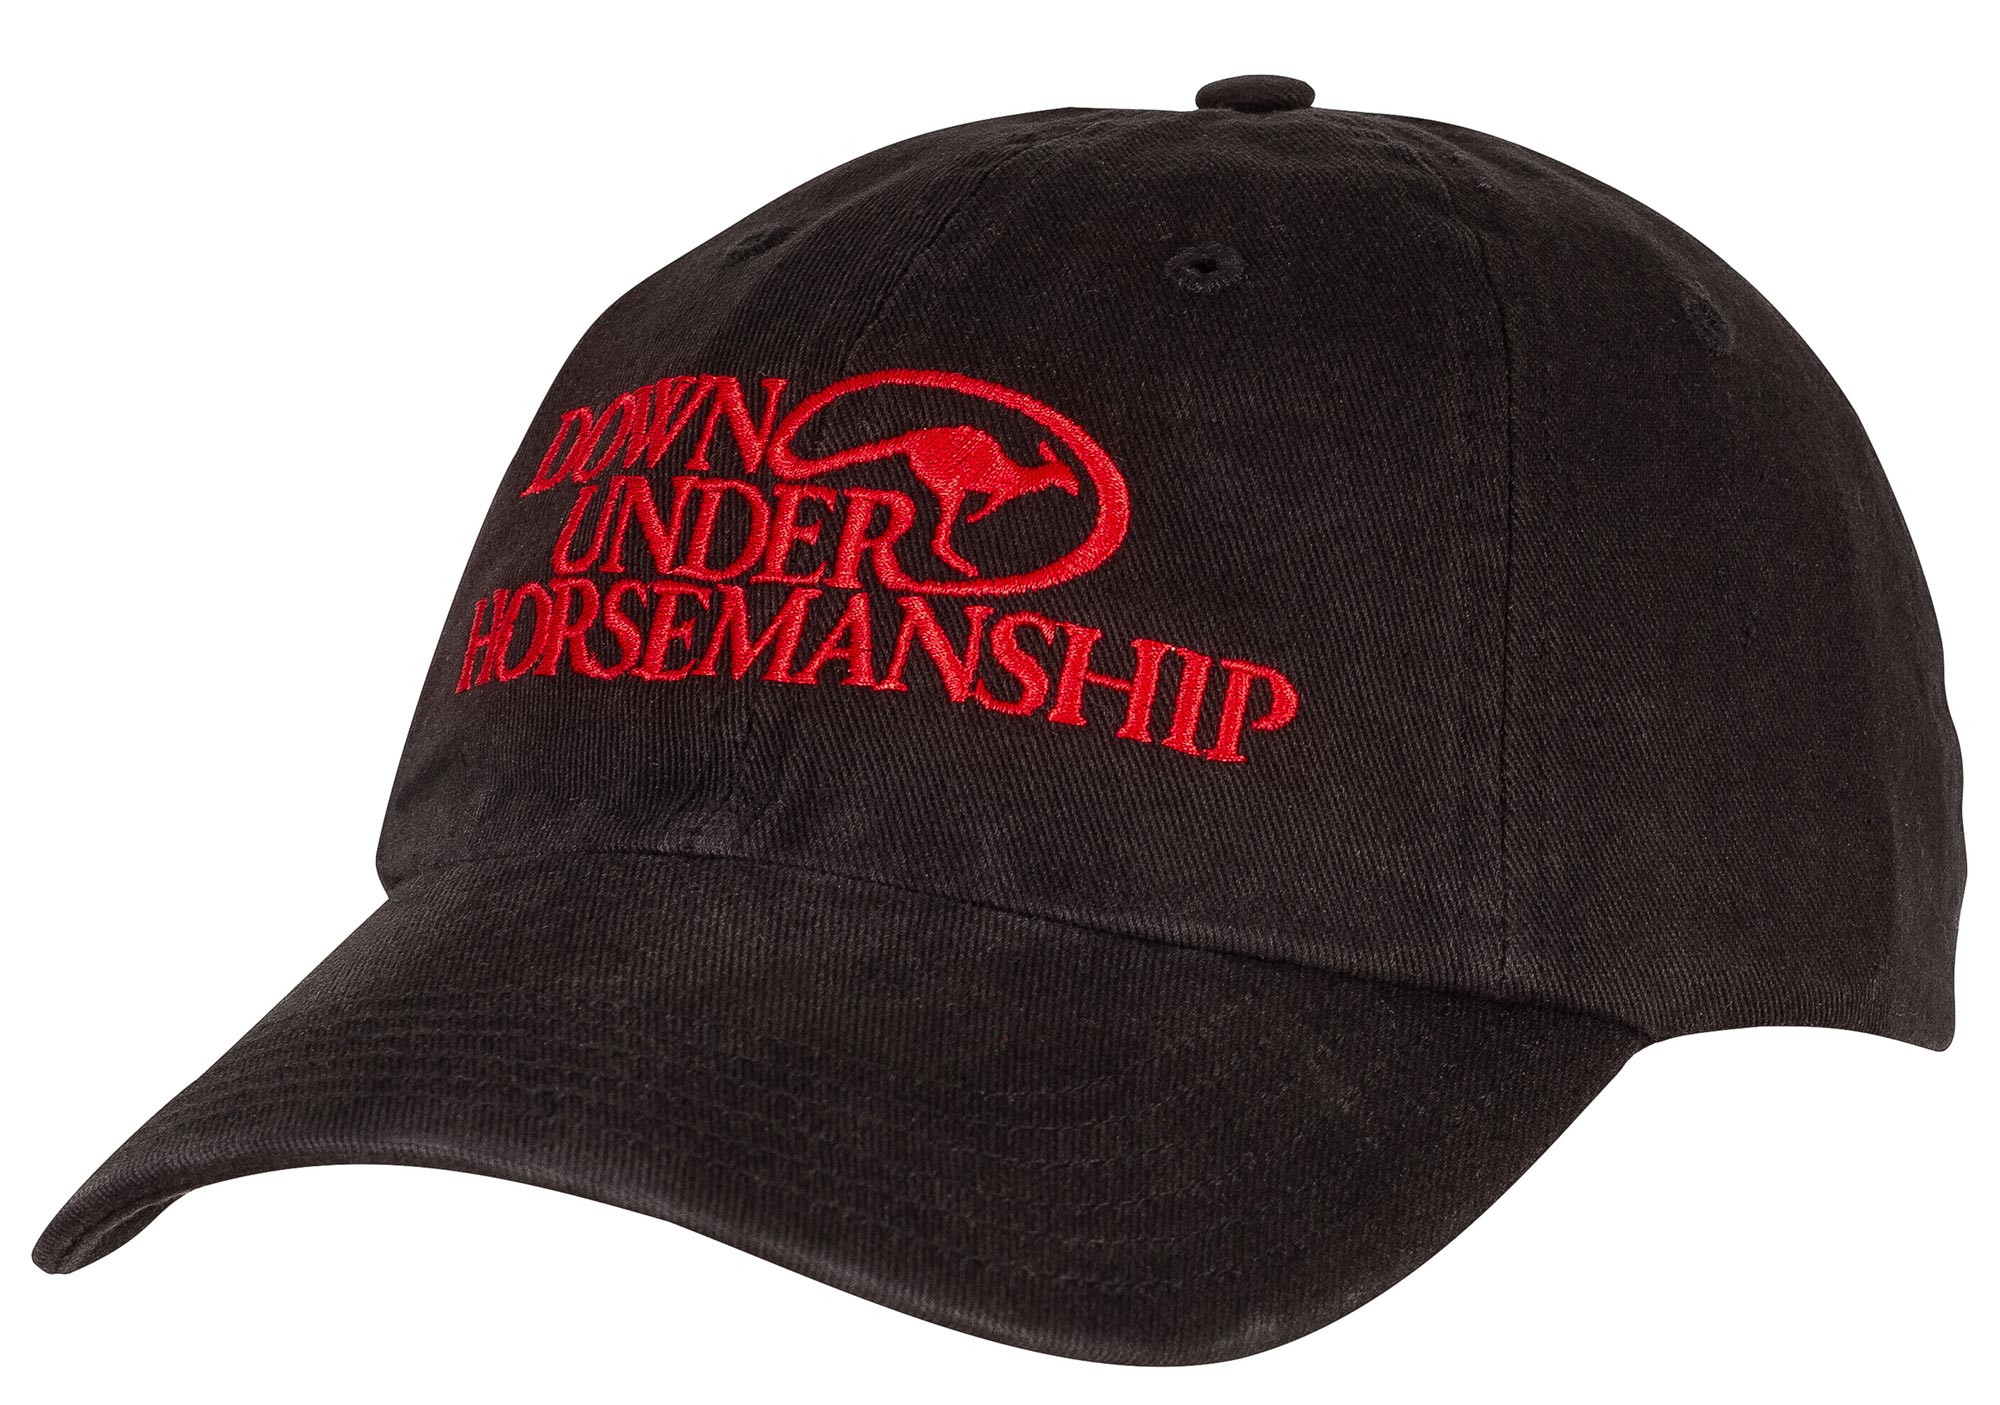 Downunder Horsemanship Logo Cap